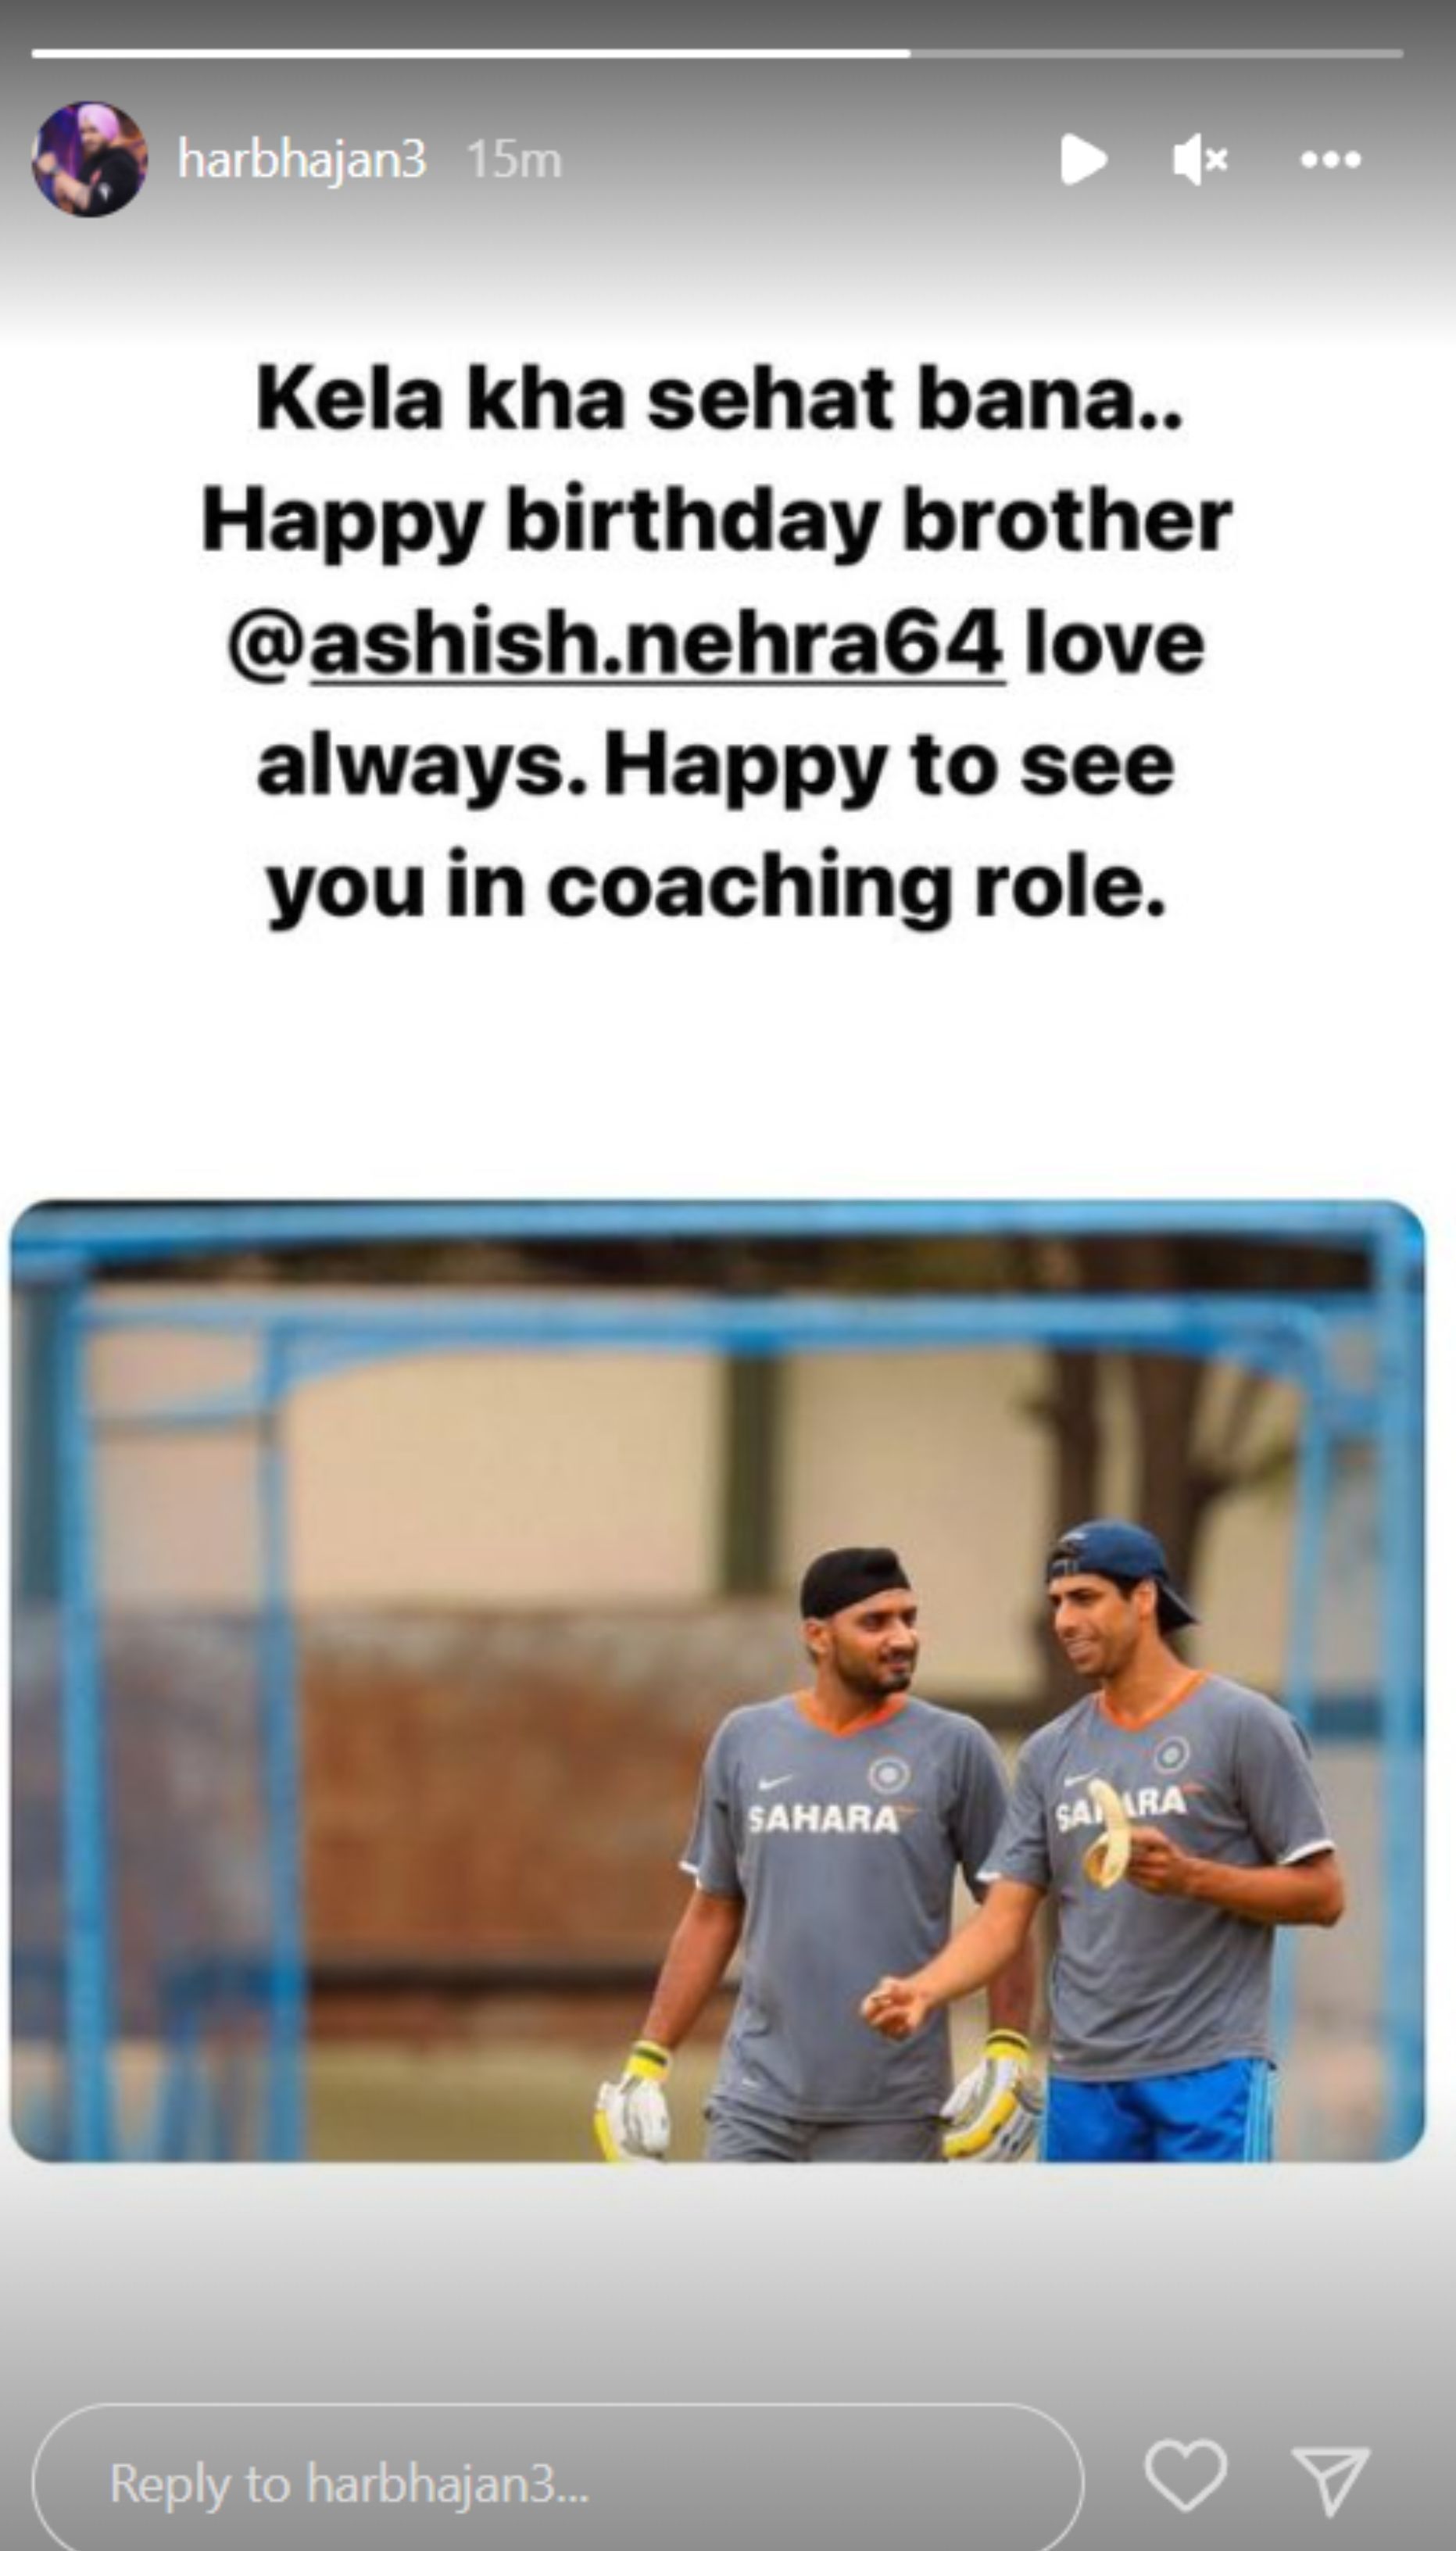 Harbhajan Singh wished via Instagram